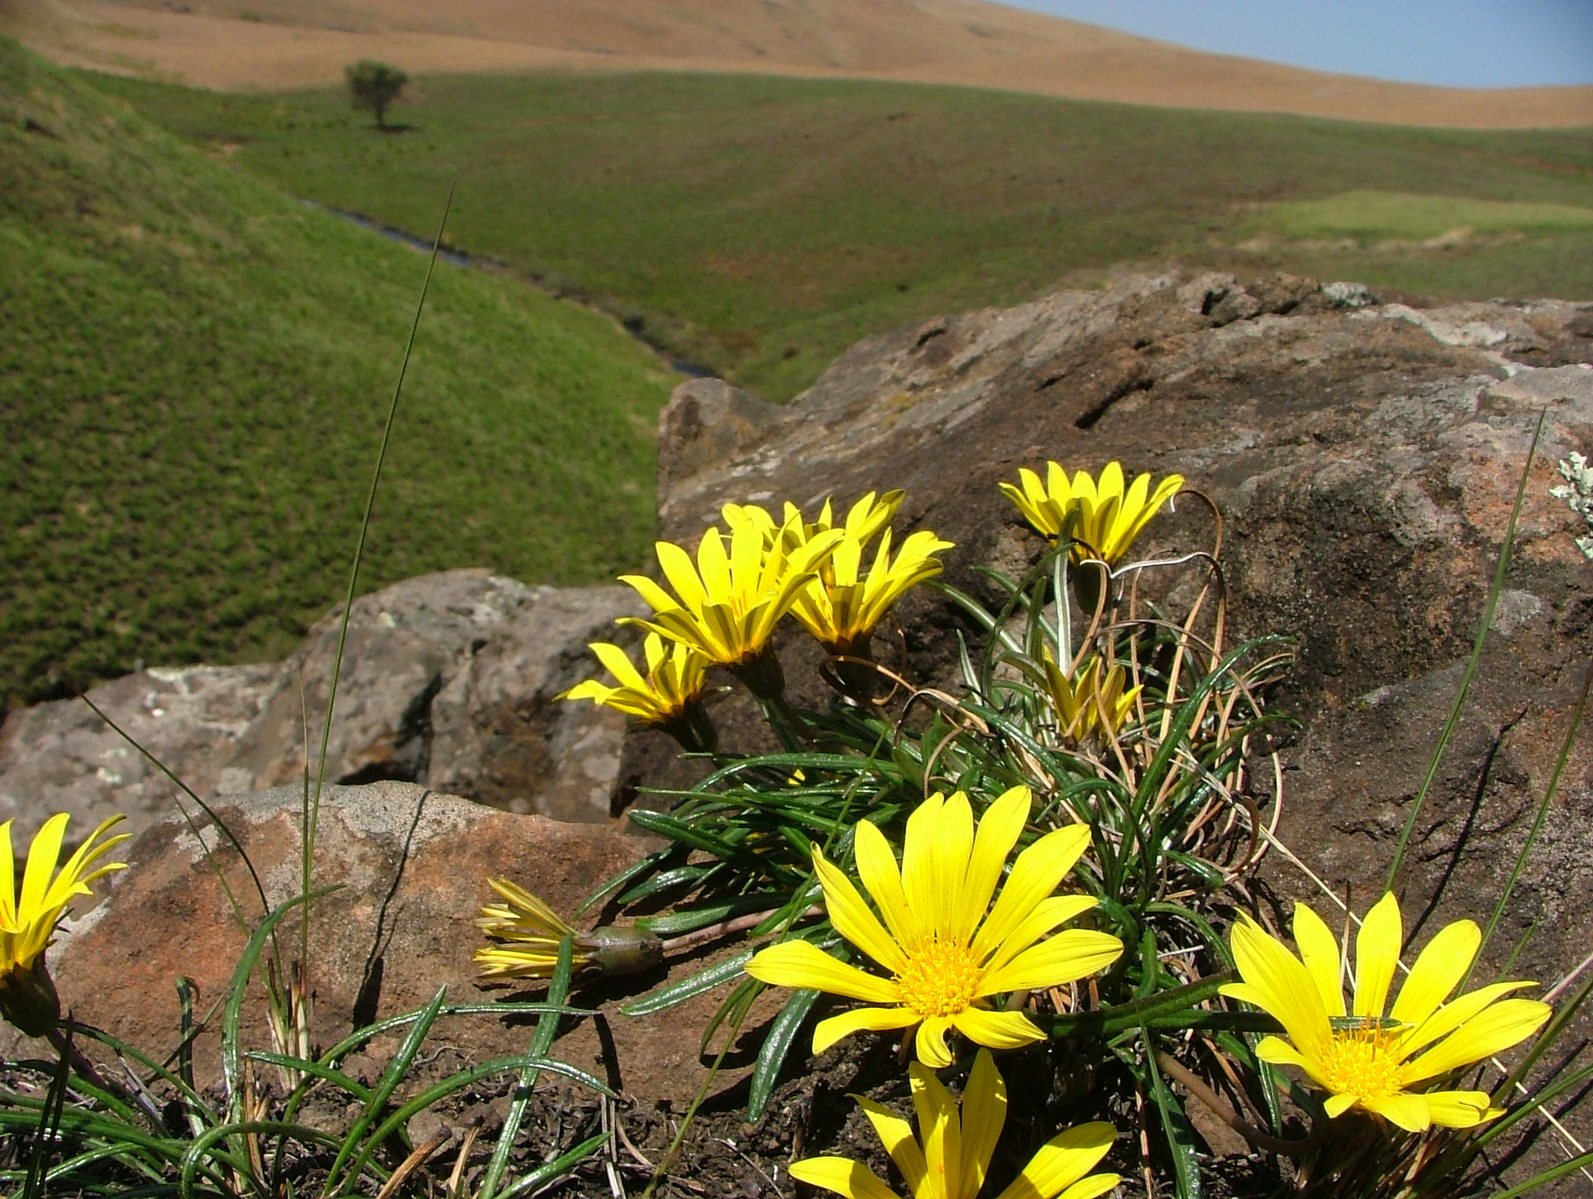 a few yellow flowers growing near some rocks